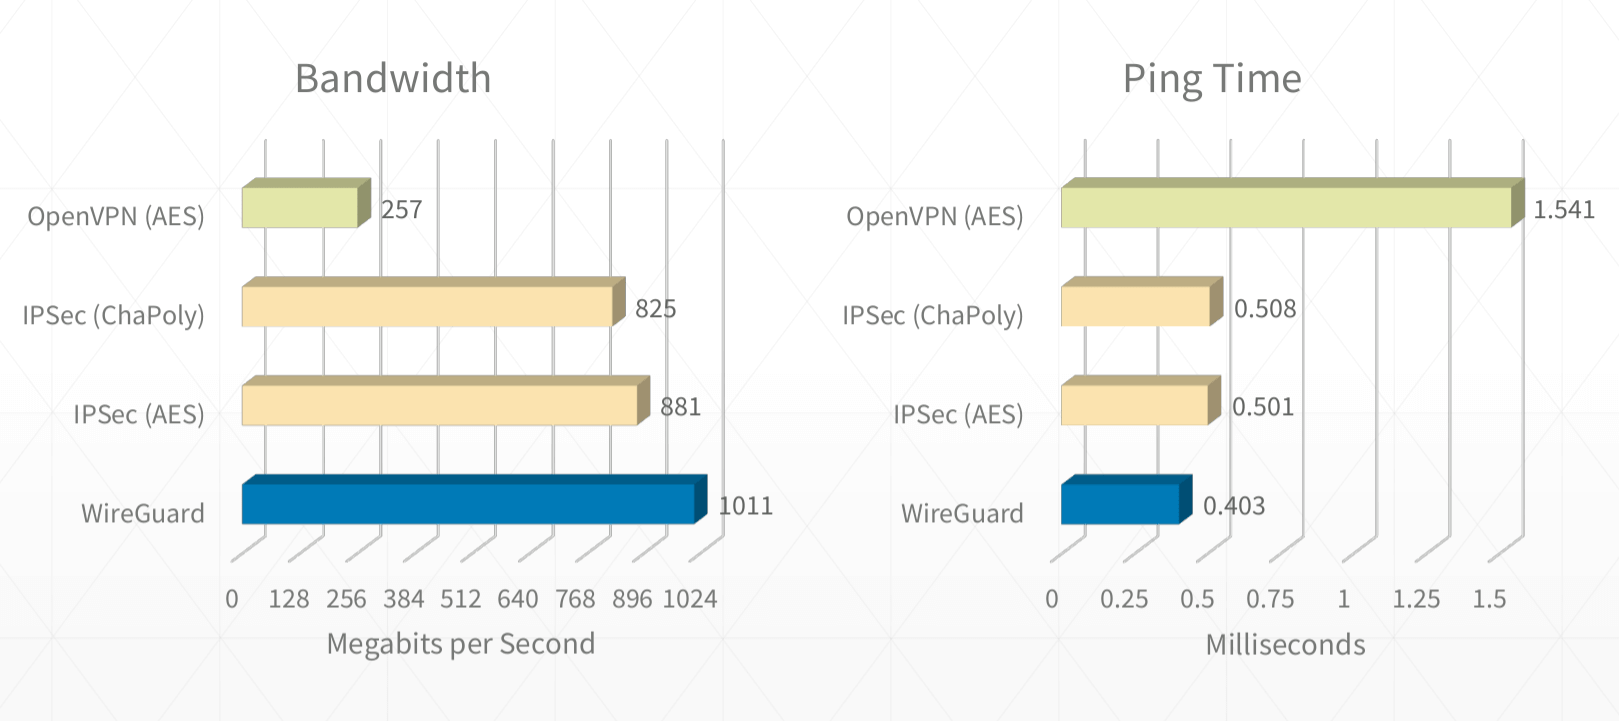 ireGuard 与其他 VPN 协议的性能测试对比